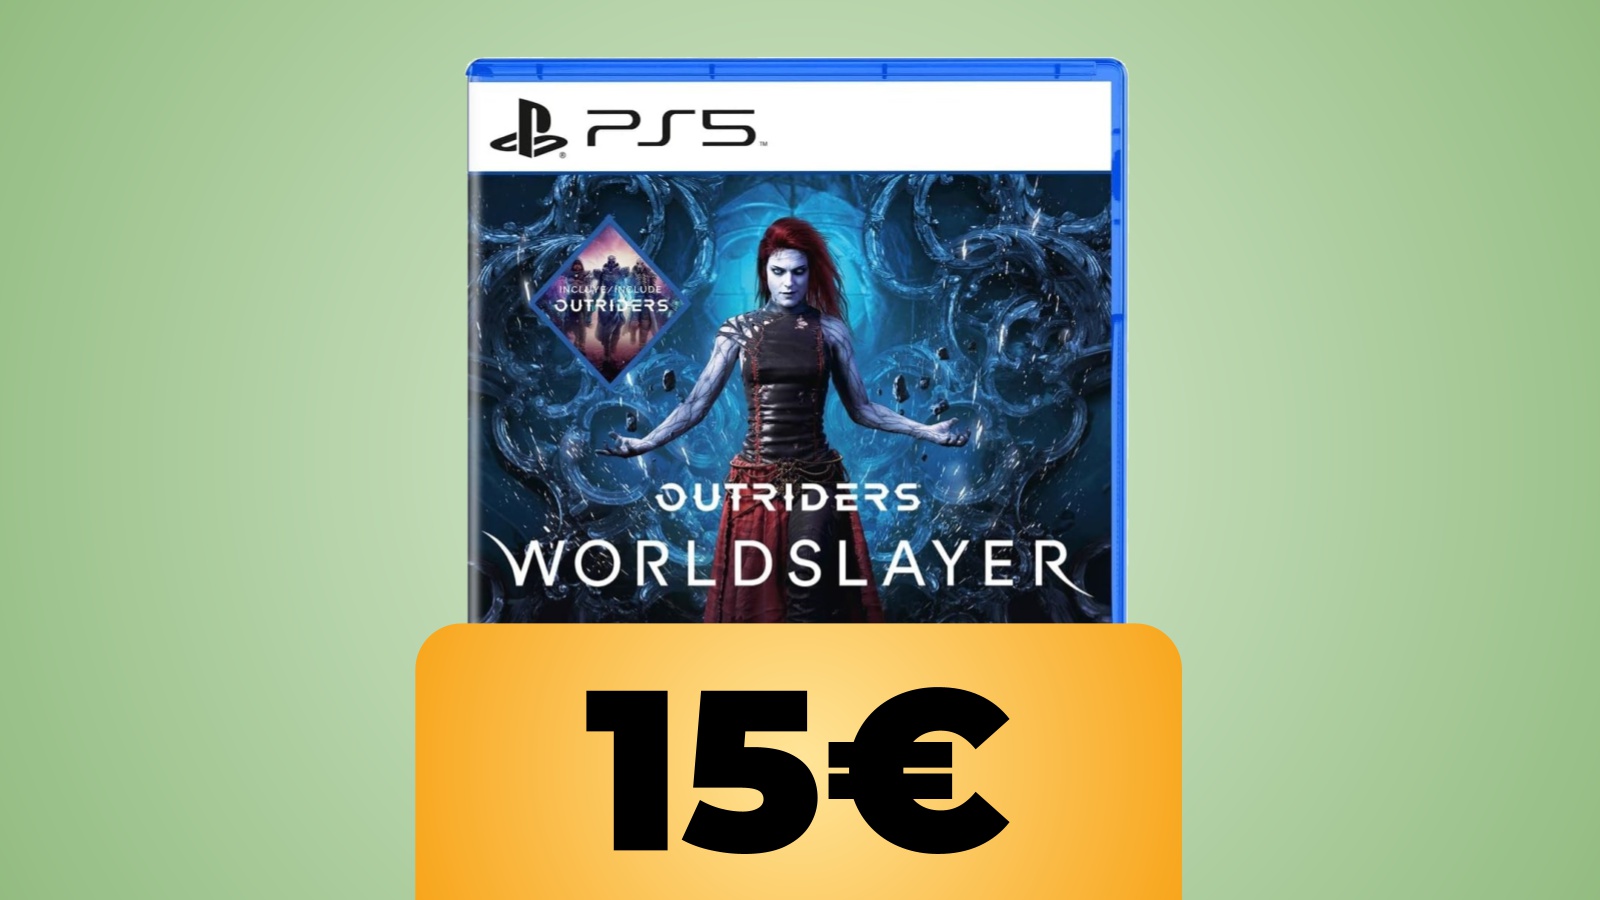 Outriders Worldslayer per PS5 in sconto al prezzo minimo storico su Amazon Italia